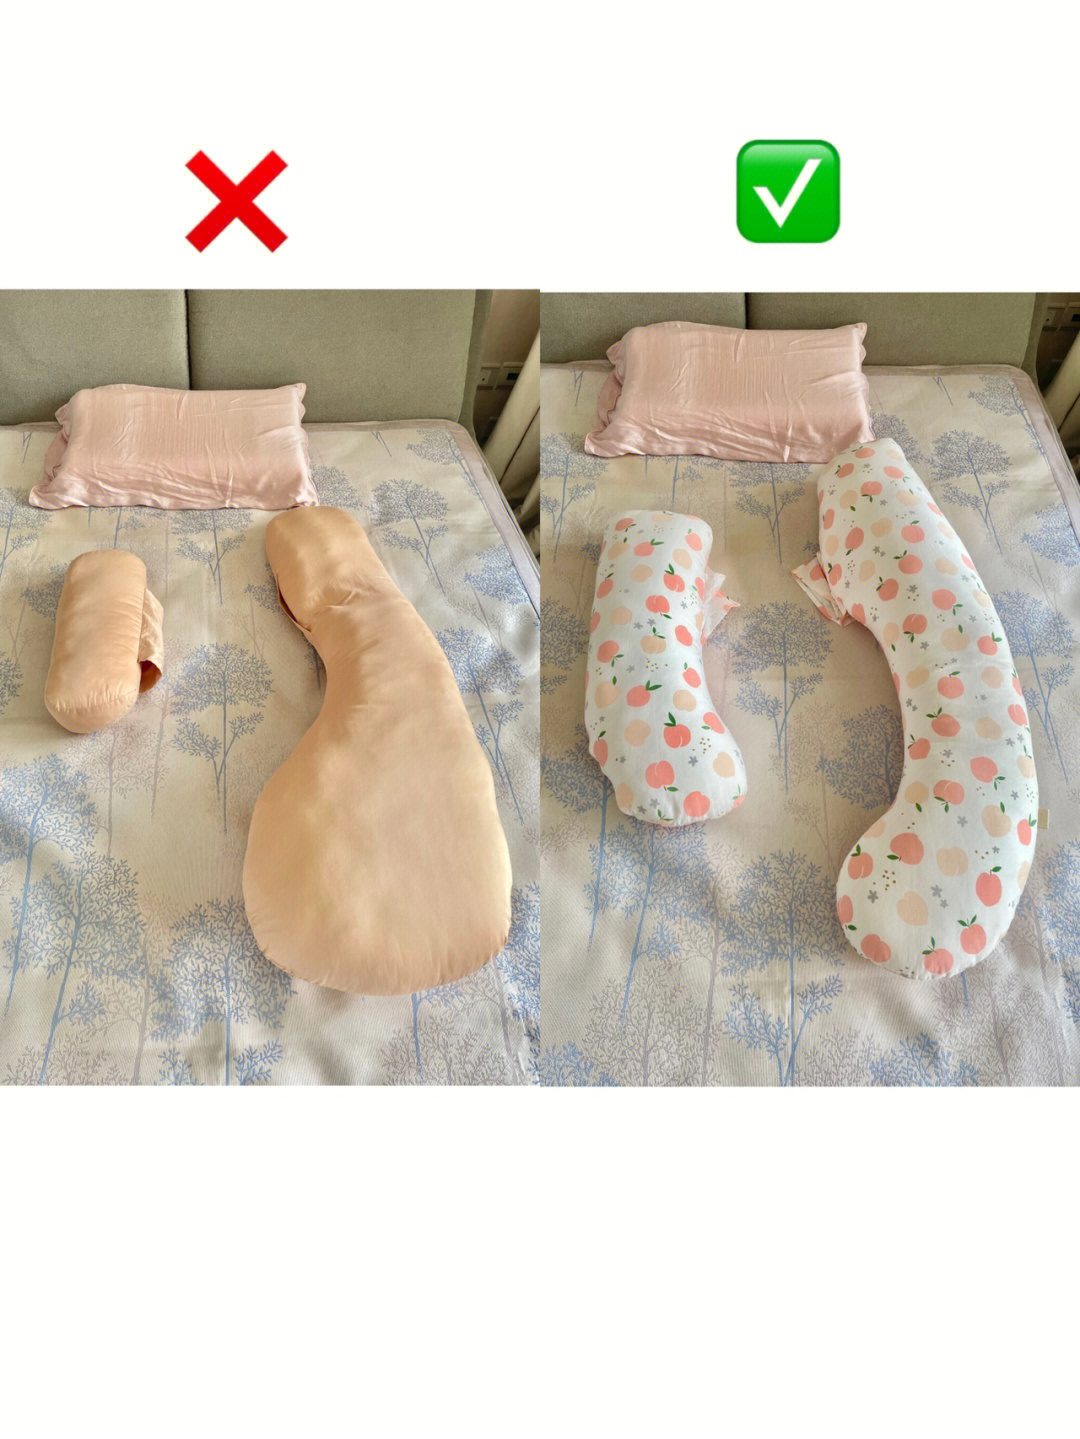 孕妇枕使用图解图片